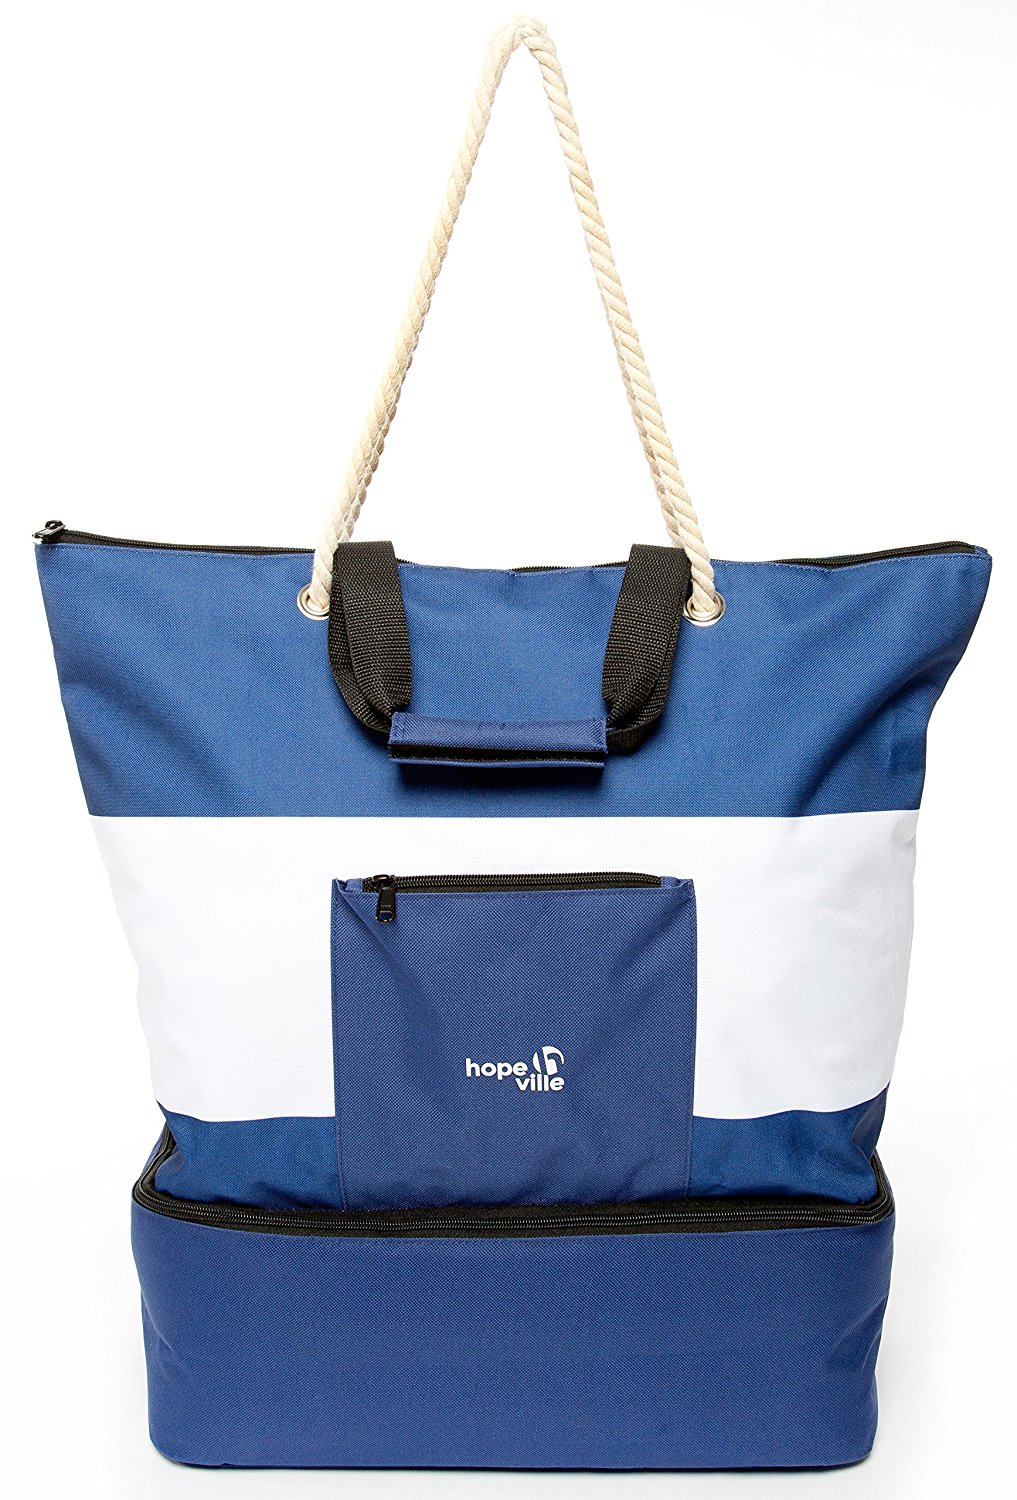 Hopeville große XXL Strandtasche mit Reißverschluss und Integrierter Kühltasche, Wasserabweisende Familien Picknicktasche im Marine-Look für Urlaub, Picknick und Shopping (Blau-Weiß)